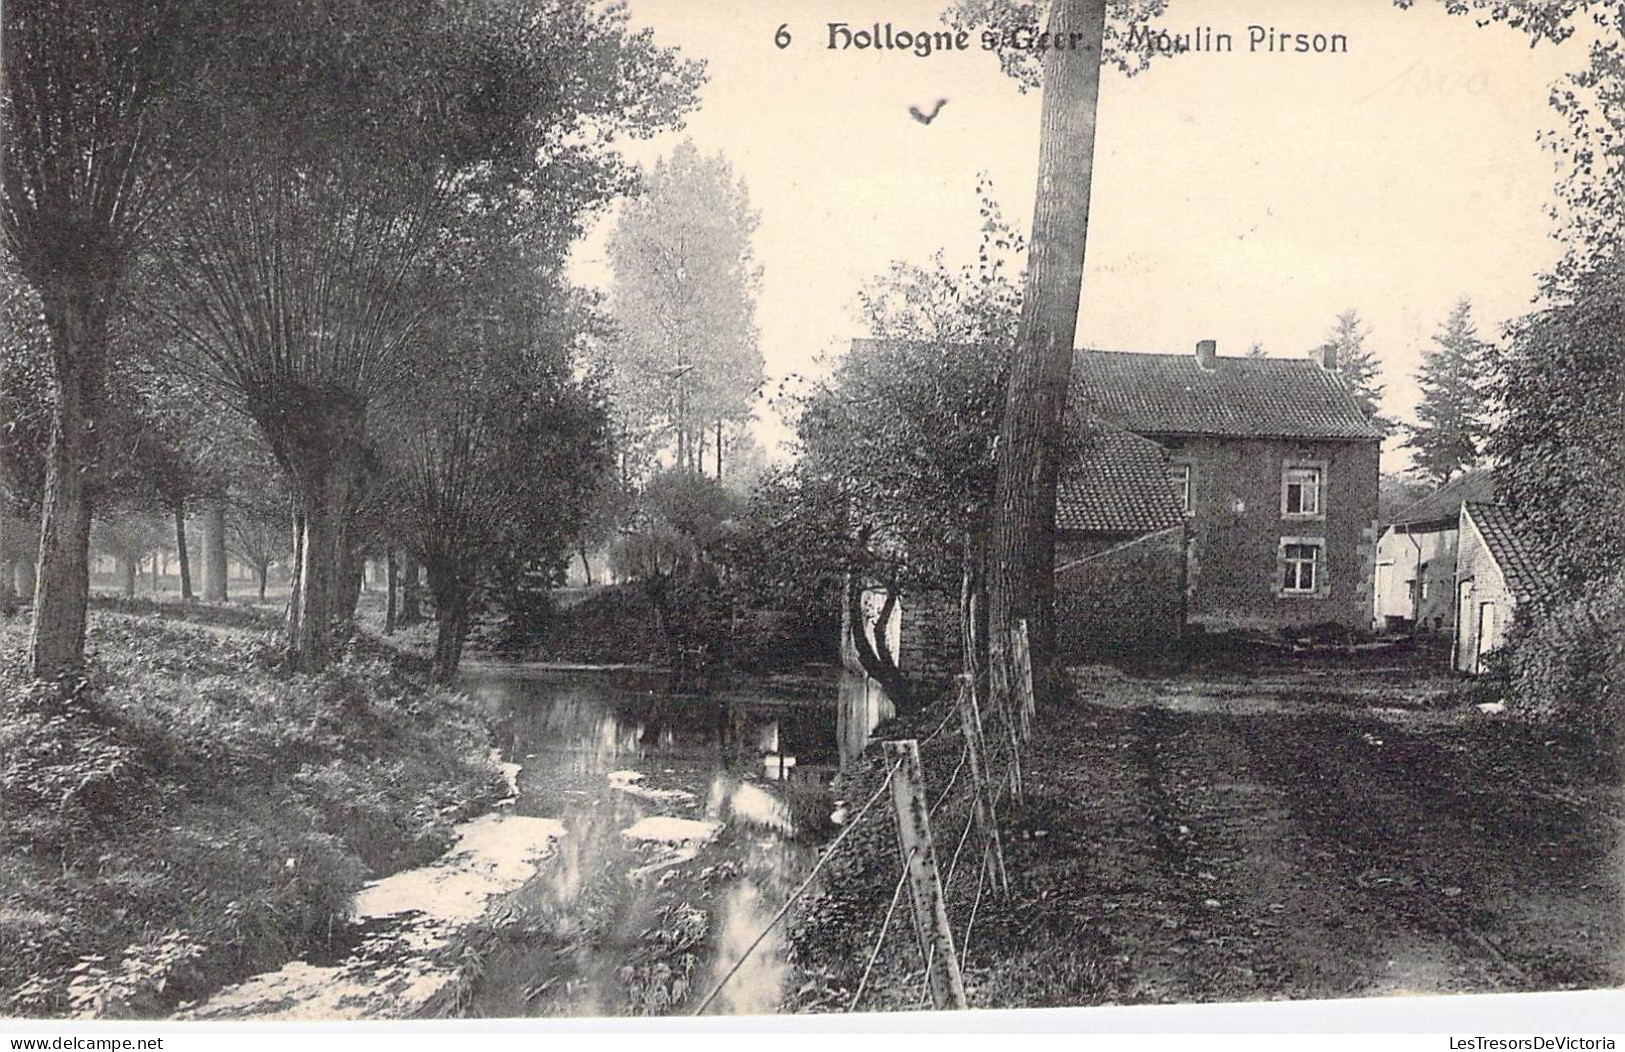 Belgique - Hollogne Sur Geer - Moulin Pirson - N. Laflotte - Rivière - Carte Postale Ancienne - Geer